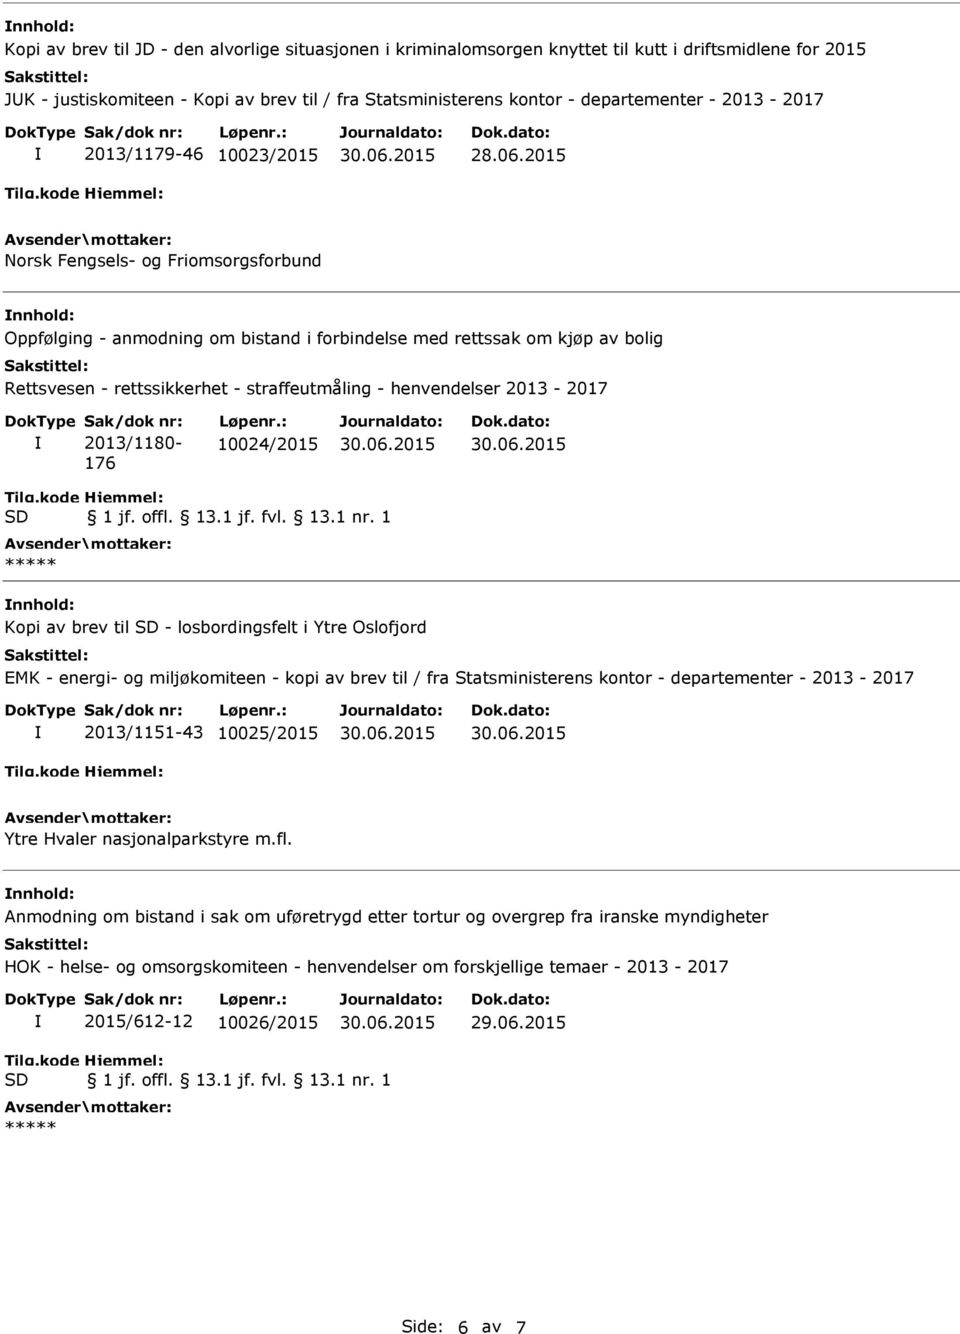 2015 Norsk Fengsels- og Friomsorgsforbund Oppfølging - anmodning om bistand i forbindelse med rettssak om kjøp av bolig Rettsvesen - rettssikkerhet - straffeutmåling - 2013/1180-176 10024/2015 Kopi